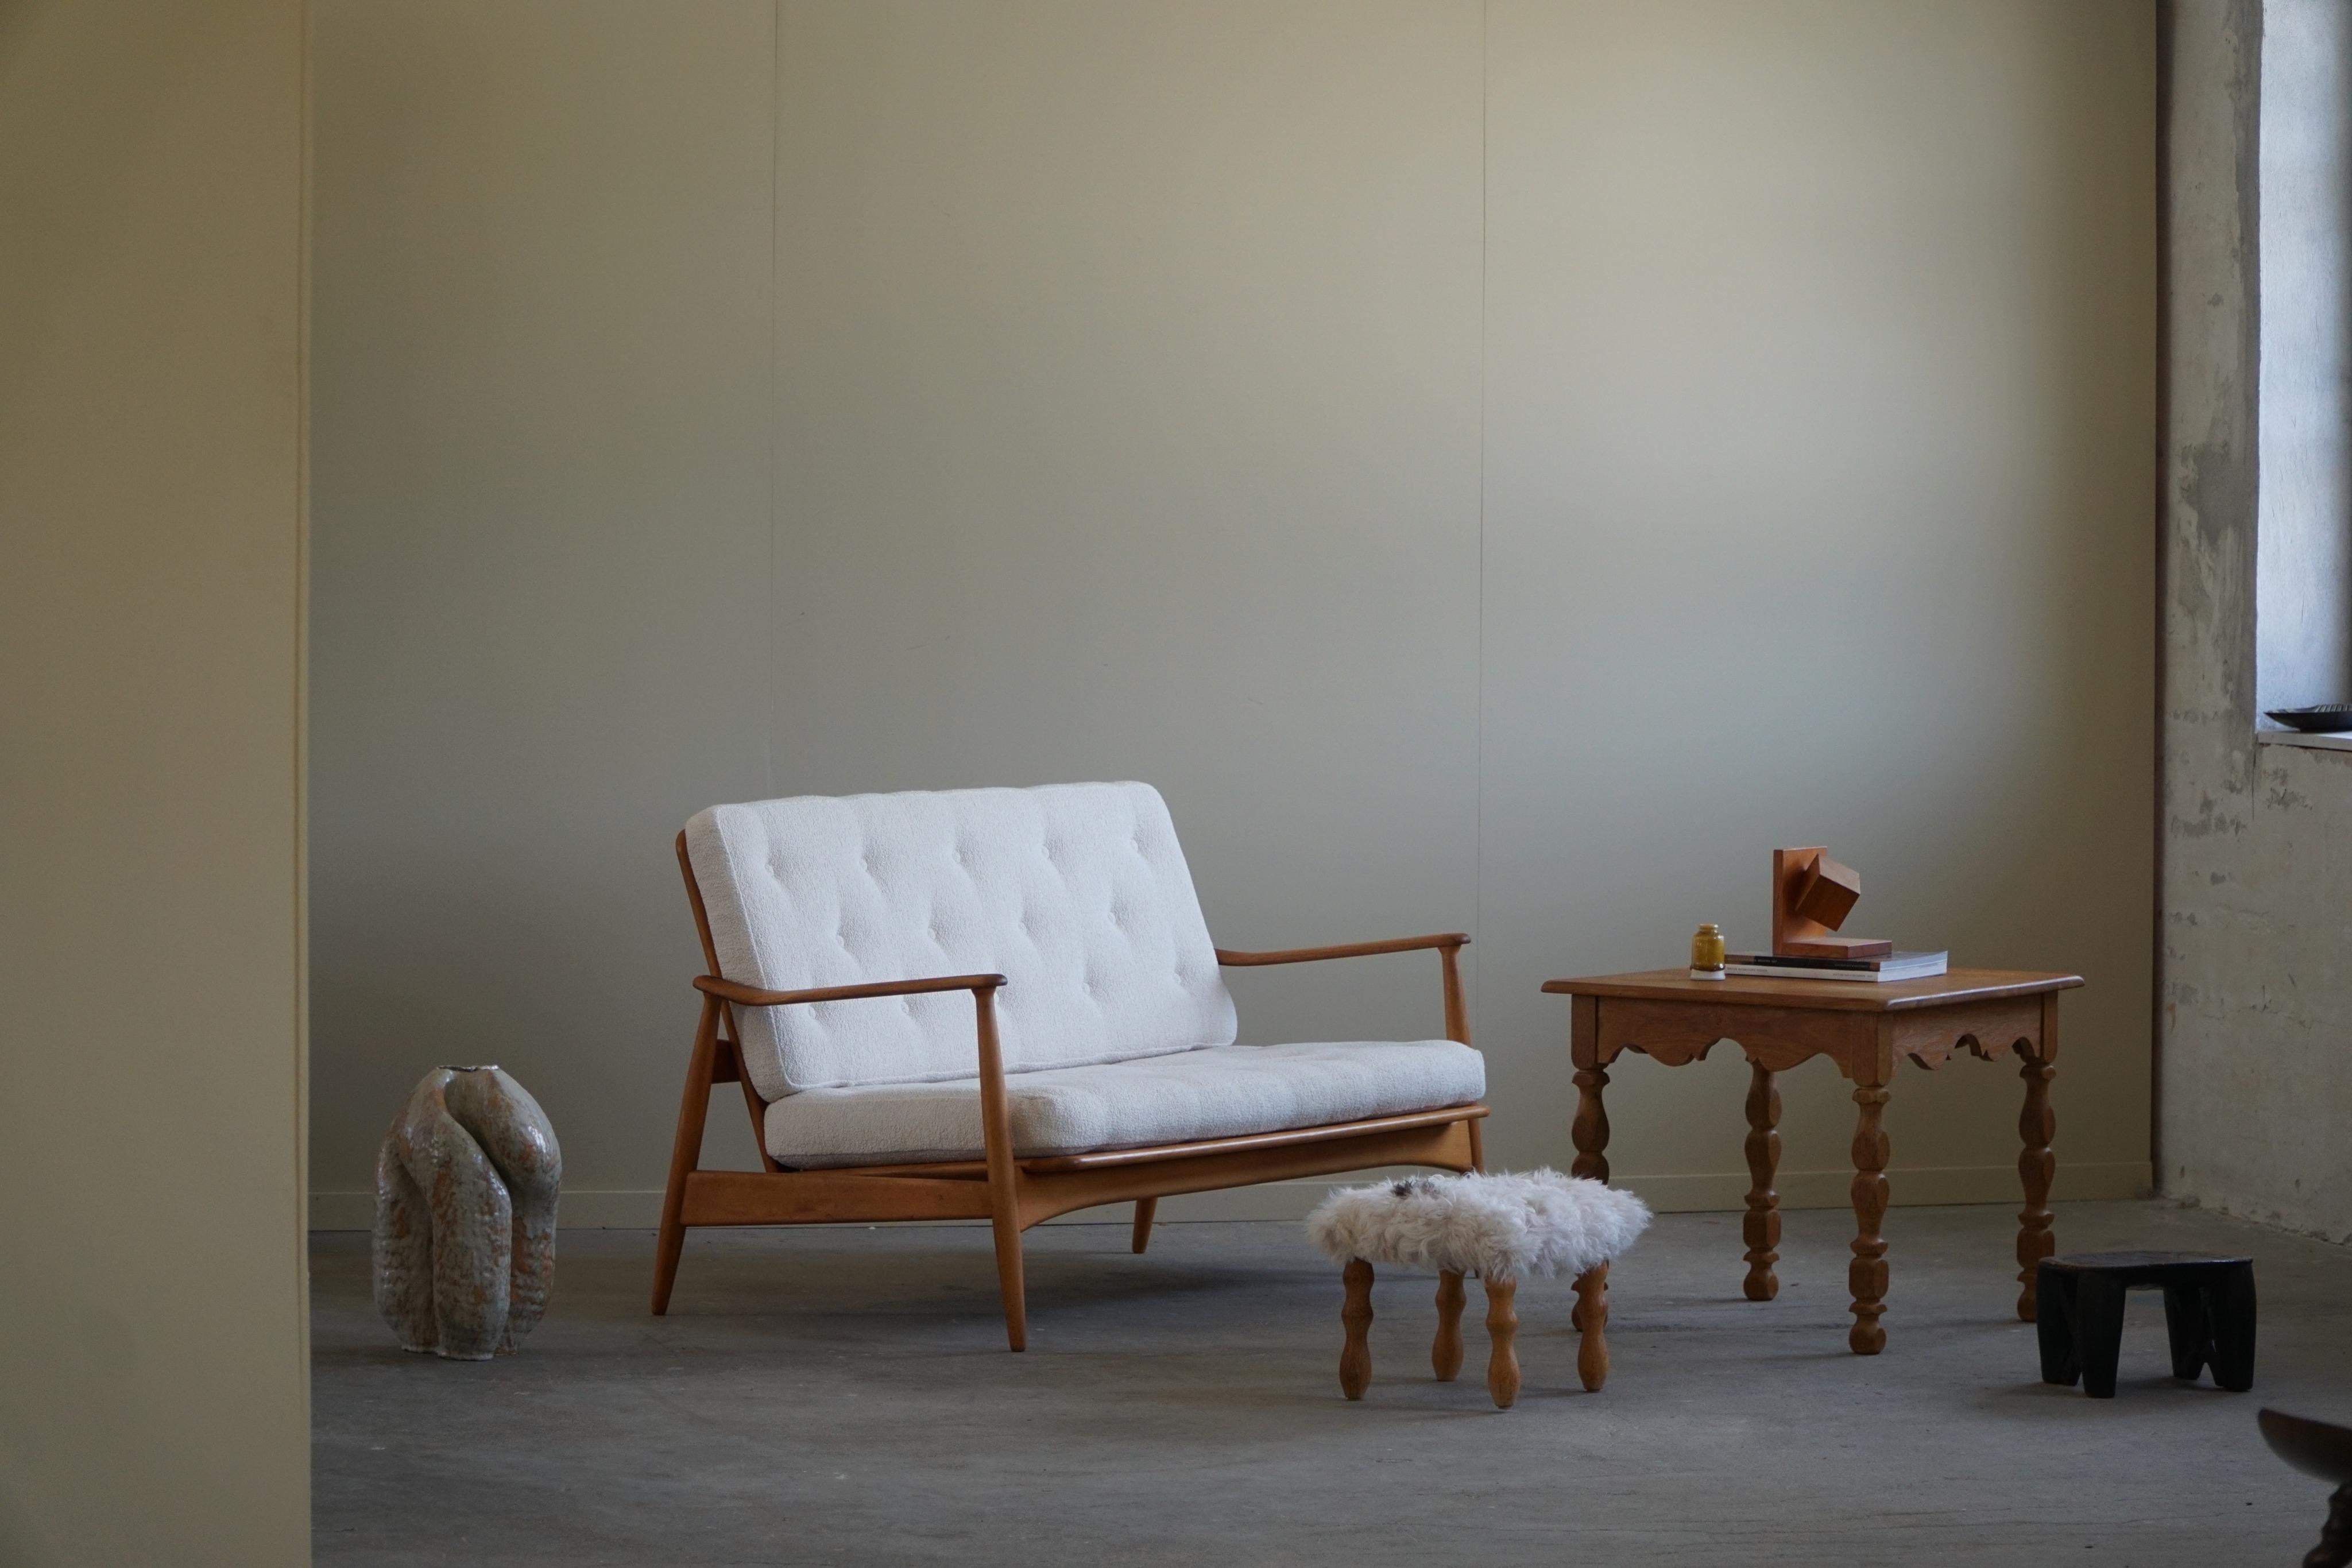 Ein schönes Beispiel für ein modernes dänisches 2-Sitzer-Sofa aus massiver Buche, mit neu gepolsterten Kissen aus weißem Bouclé. Entworfen von Arne Vodder für France & Daverkosen in den 1950er Jahren, Dänemark. 
Ein klassisches Design, das viele